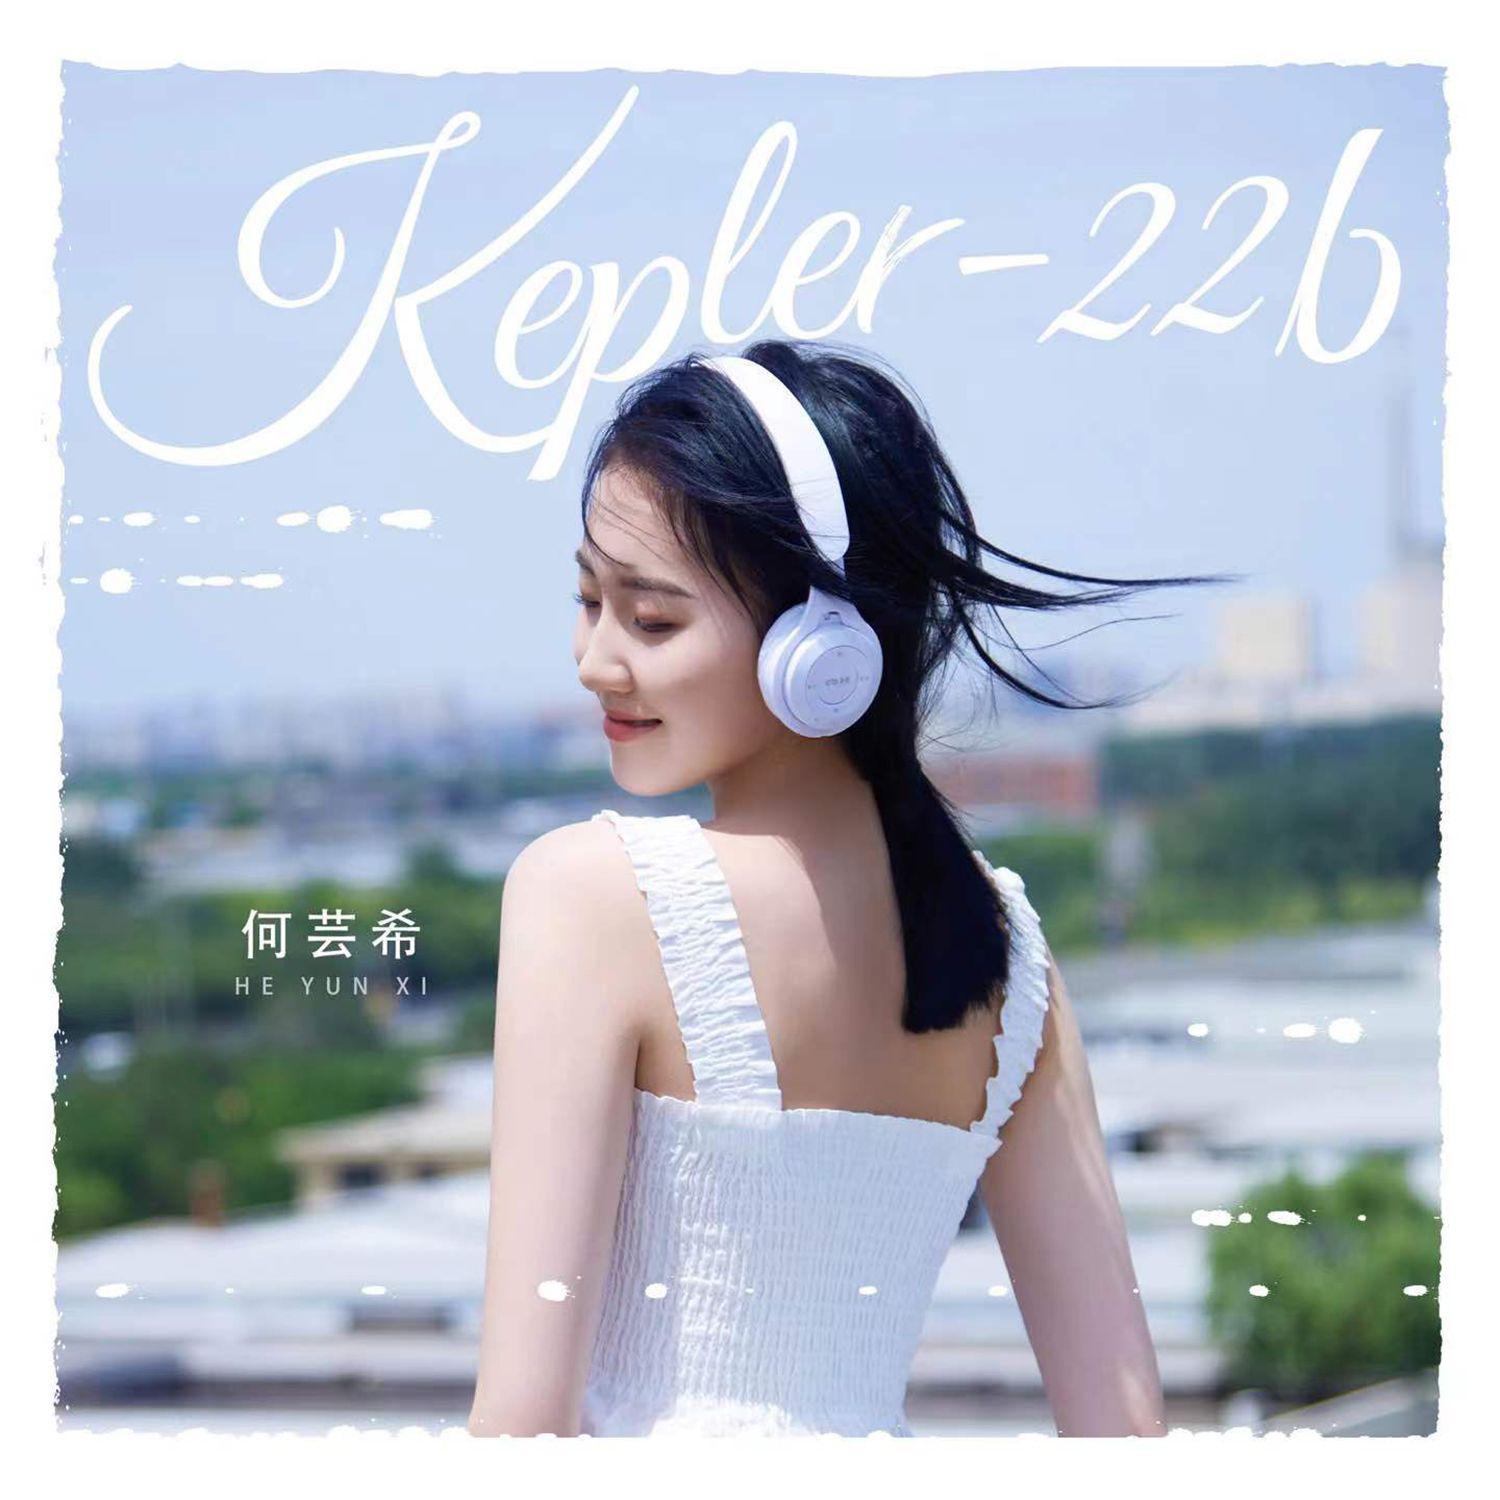 何芸希 - Kepler-22b